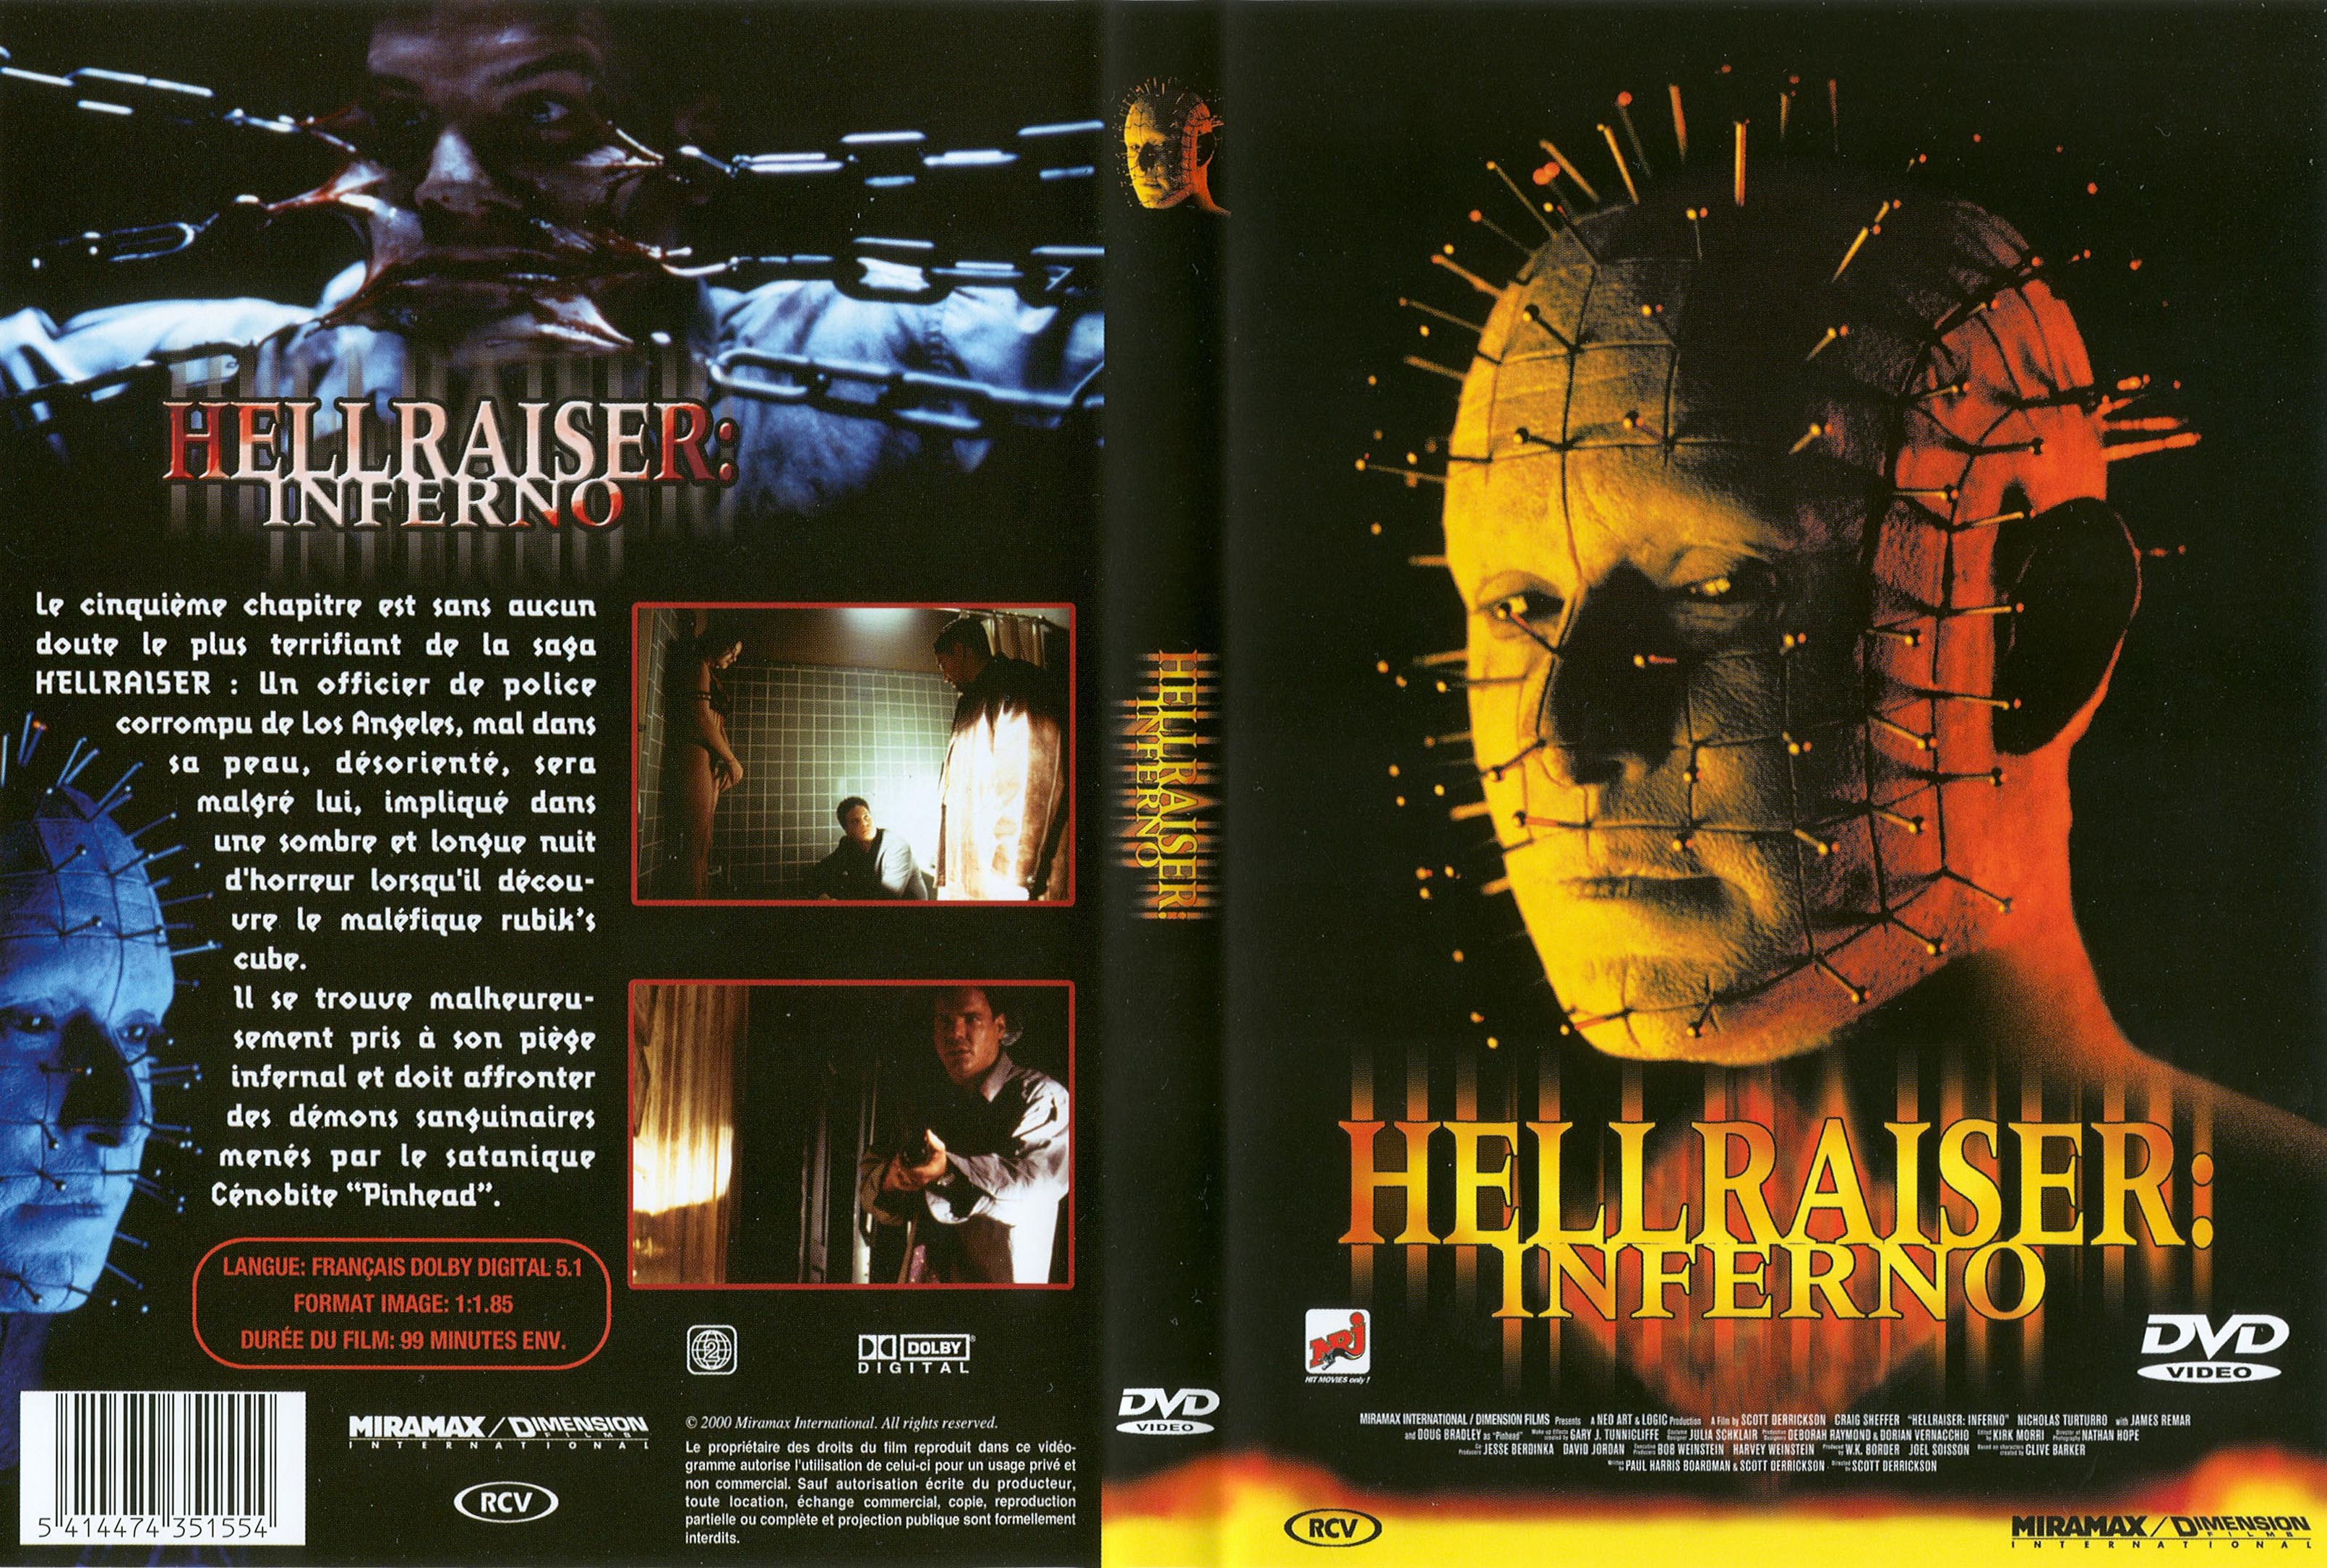 Jaquette DVD Hellraiser 5 Inferno